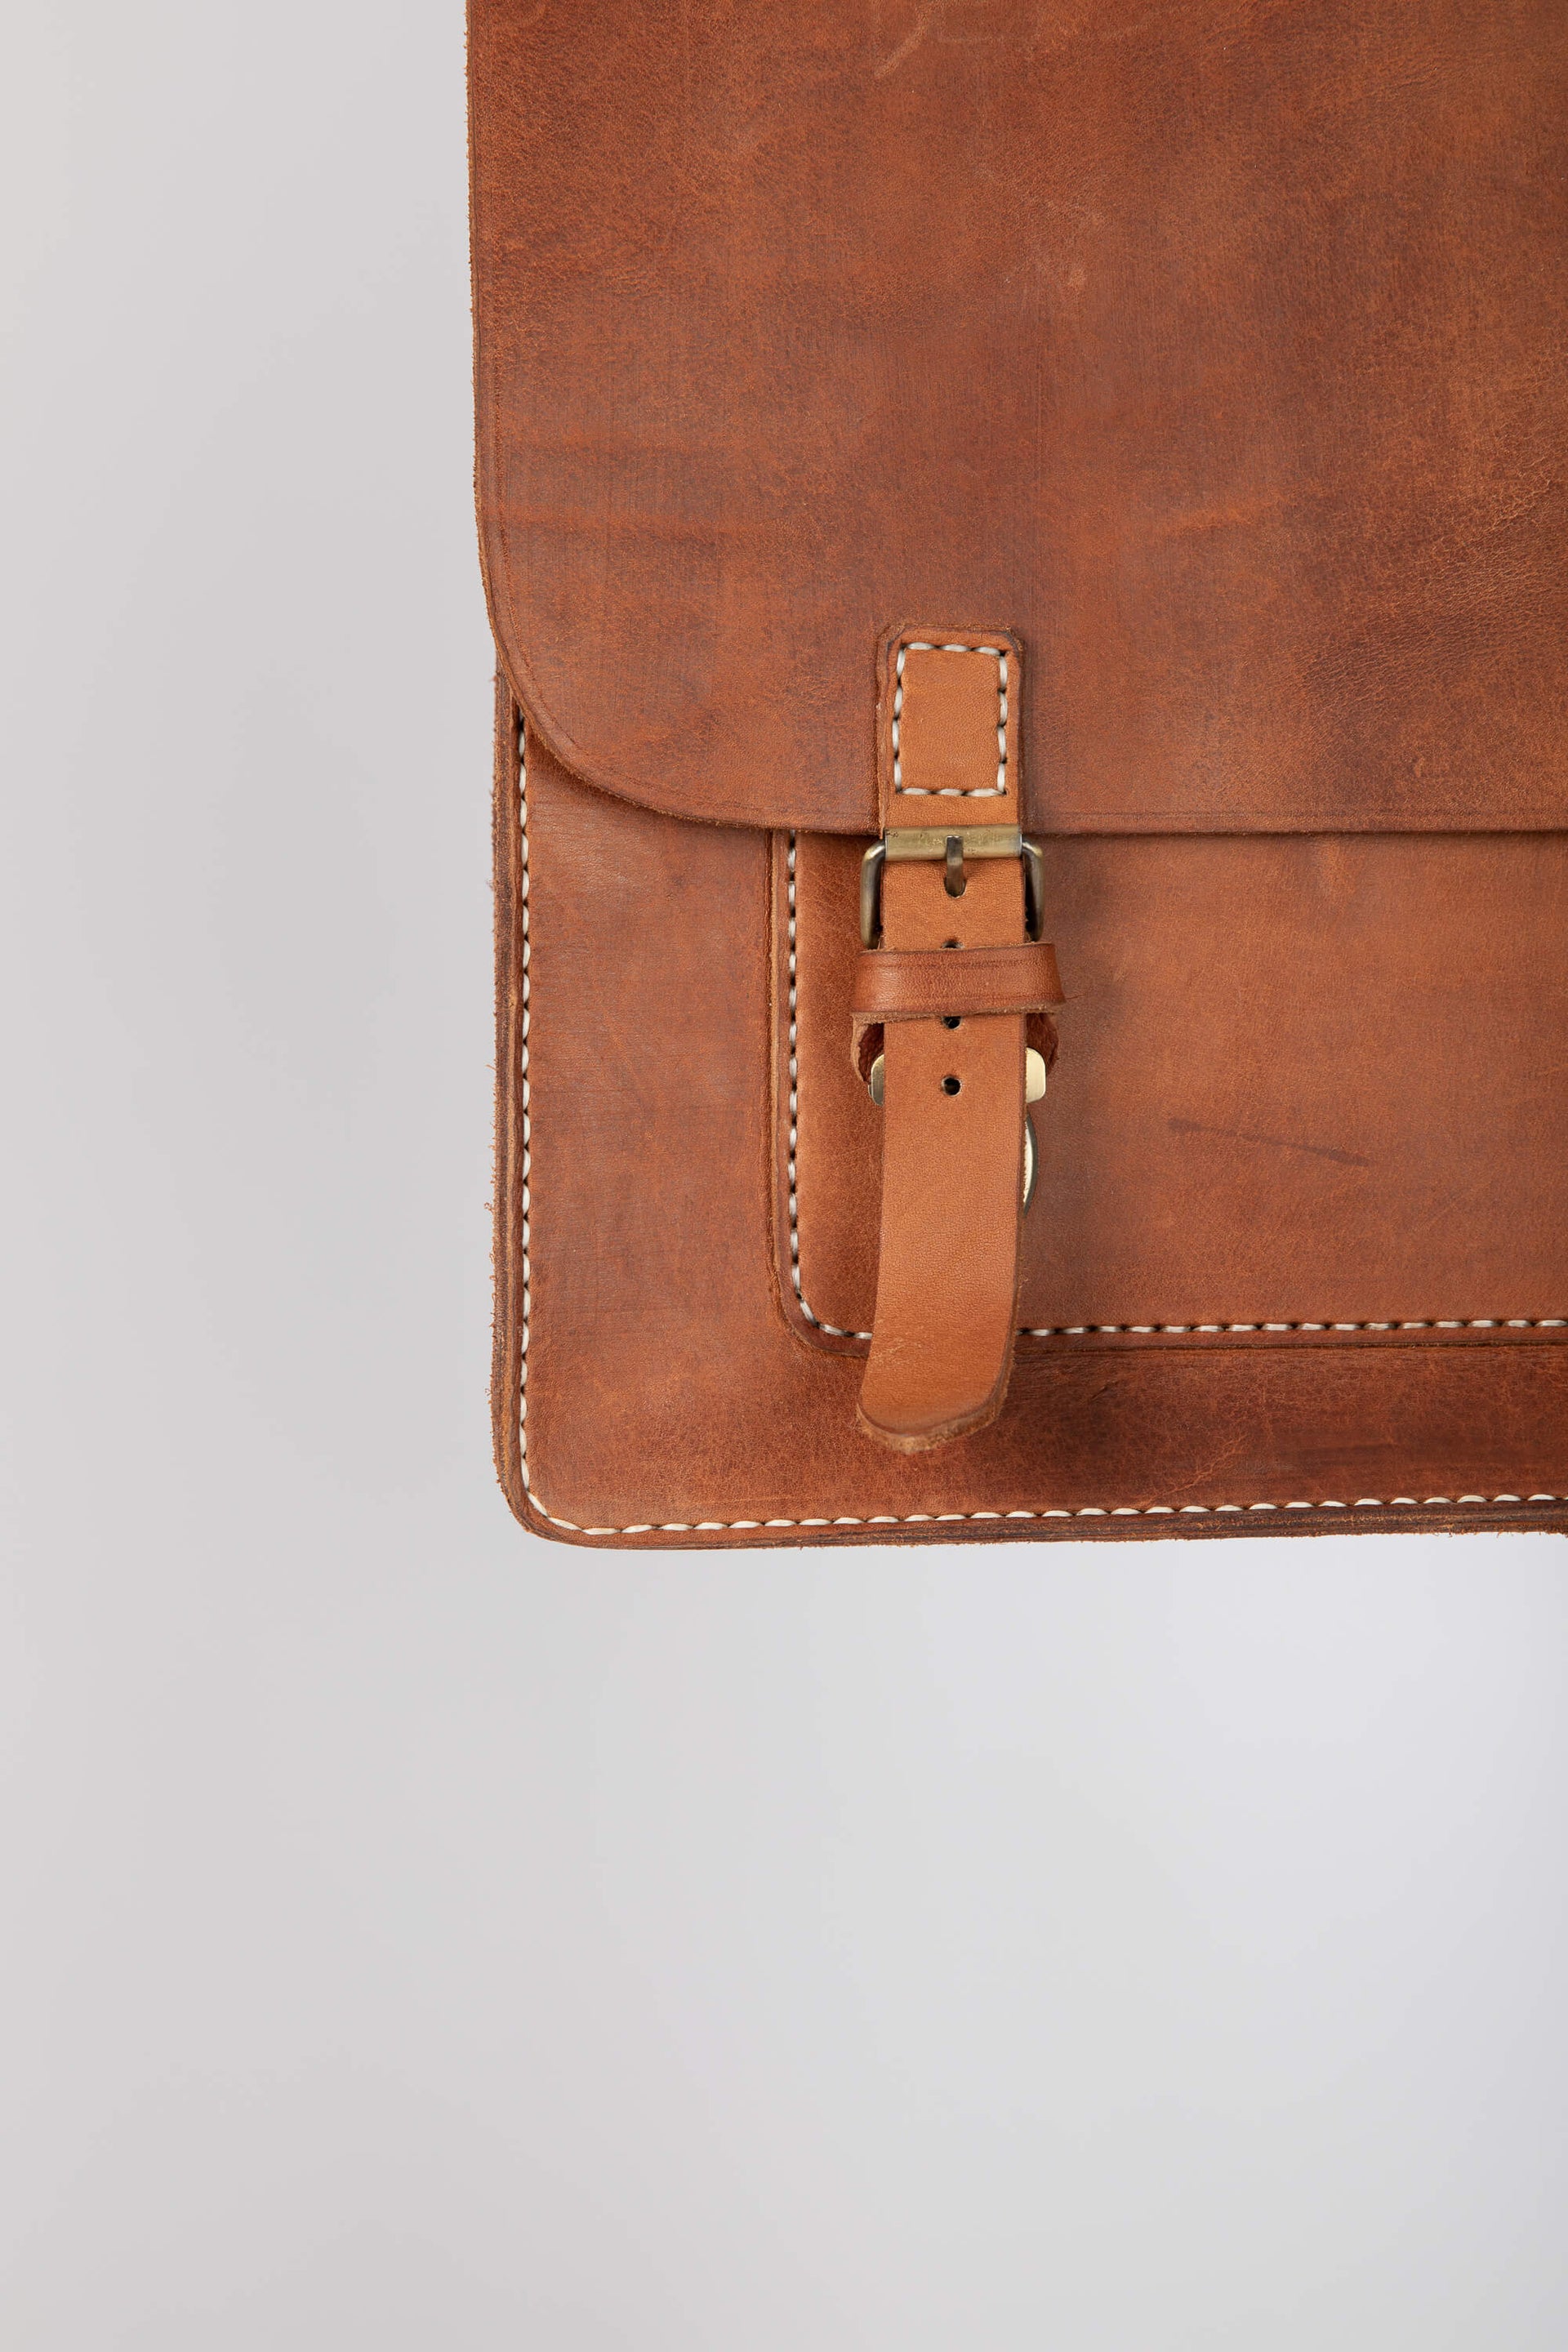 Leather Messenger Bag 15" Chestnut